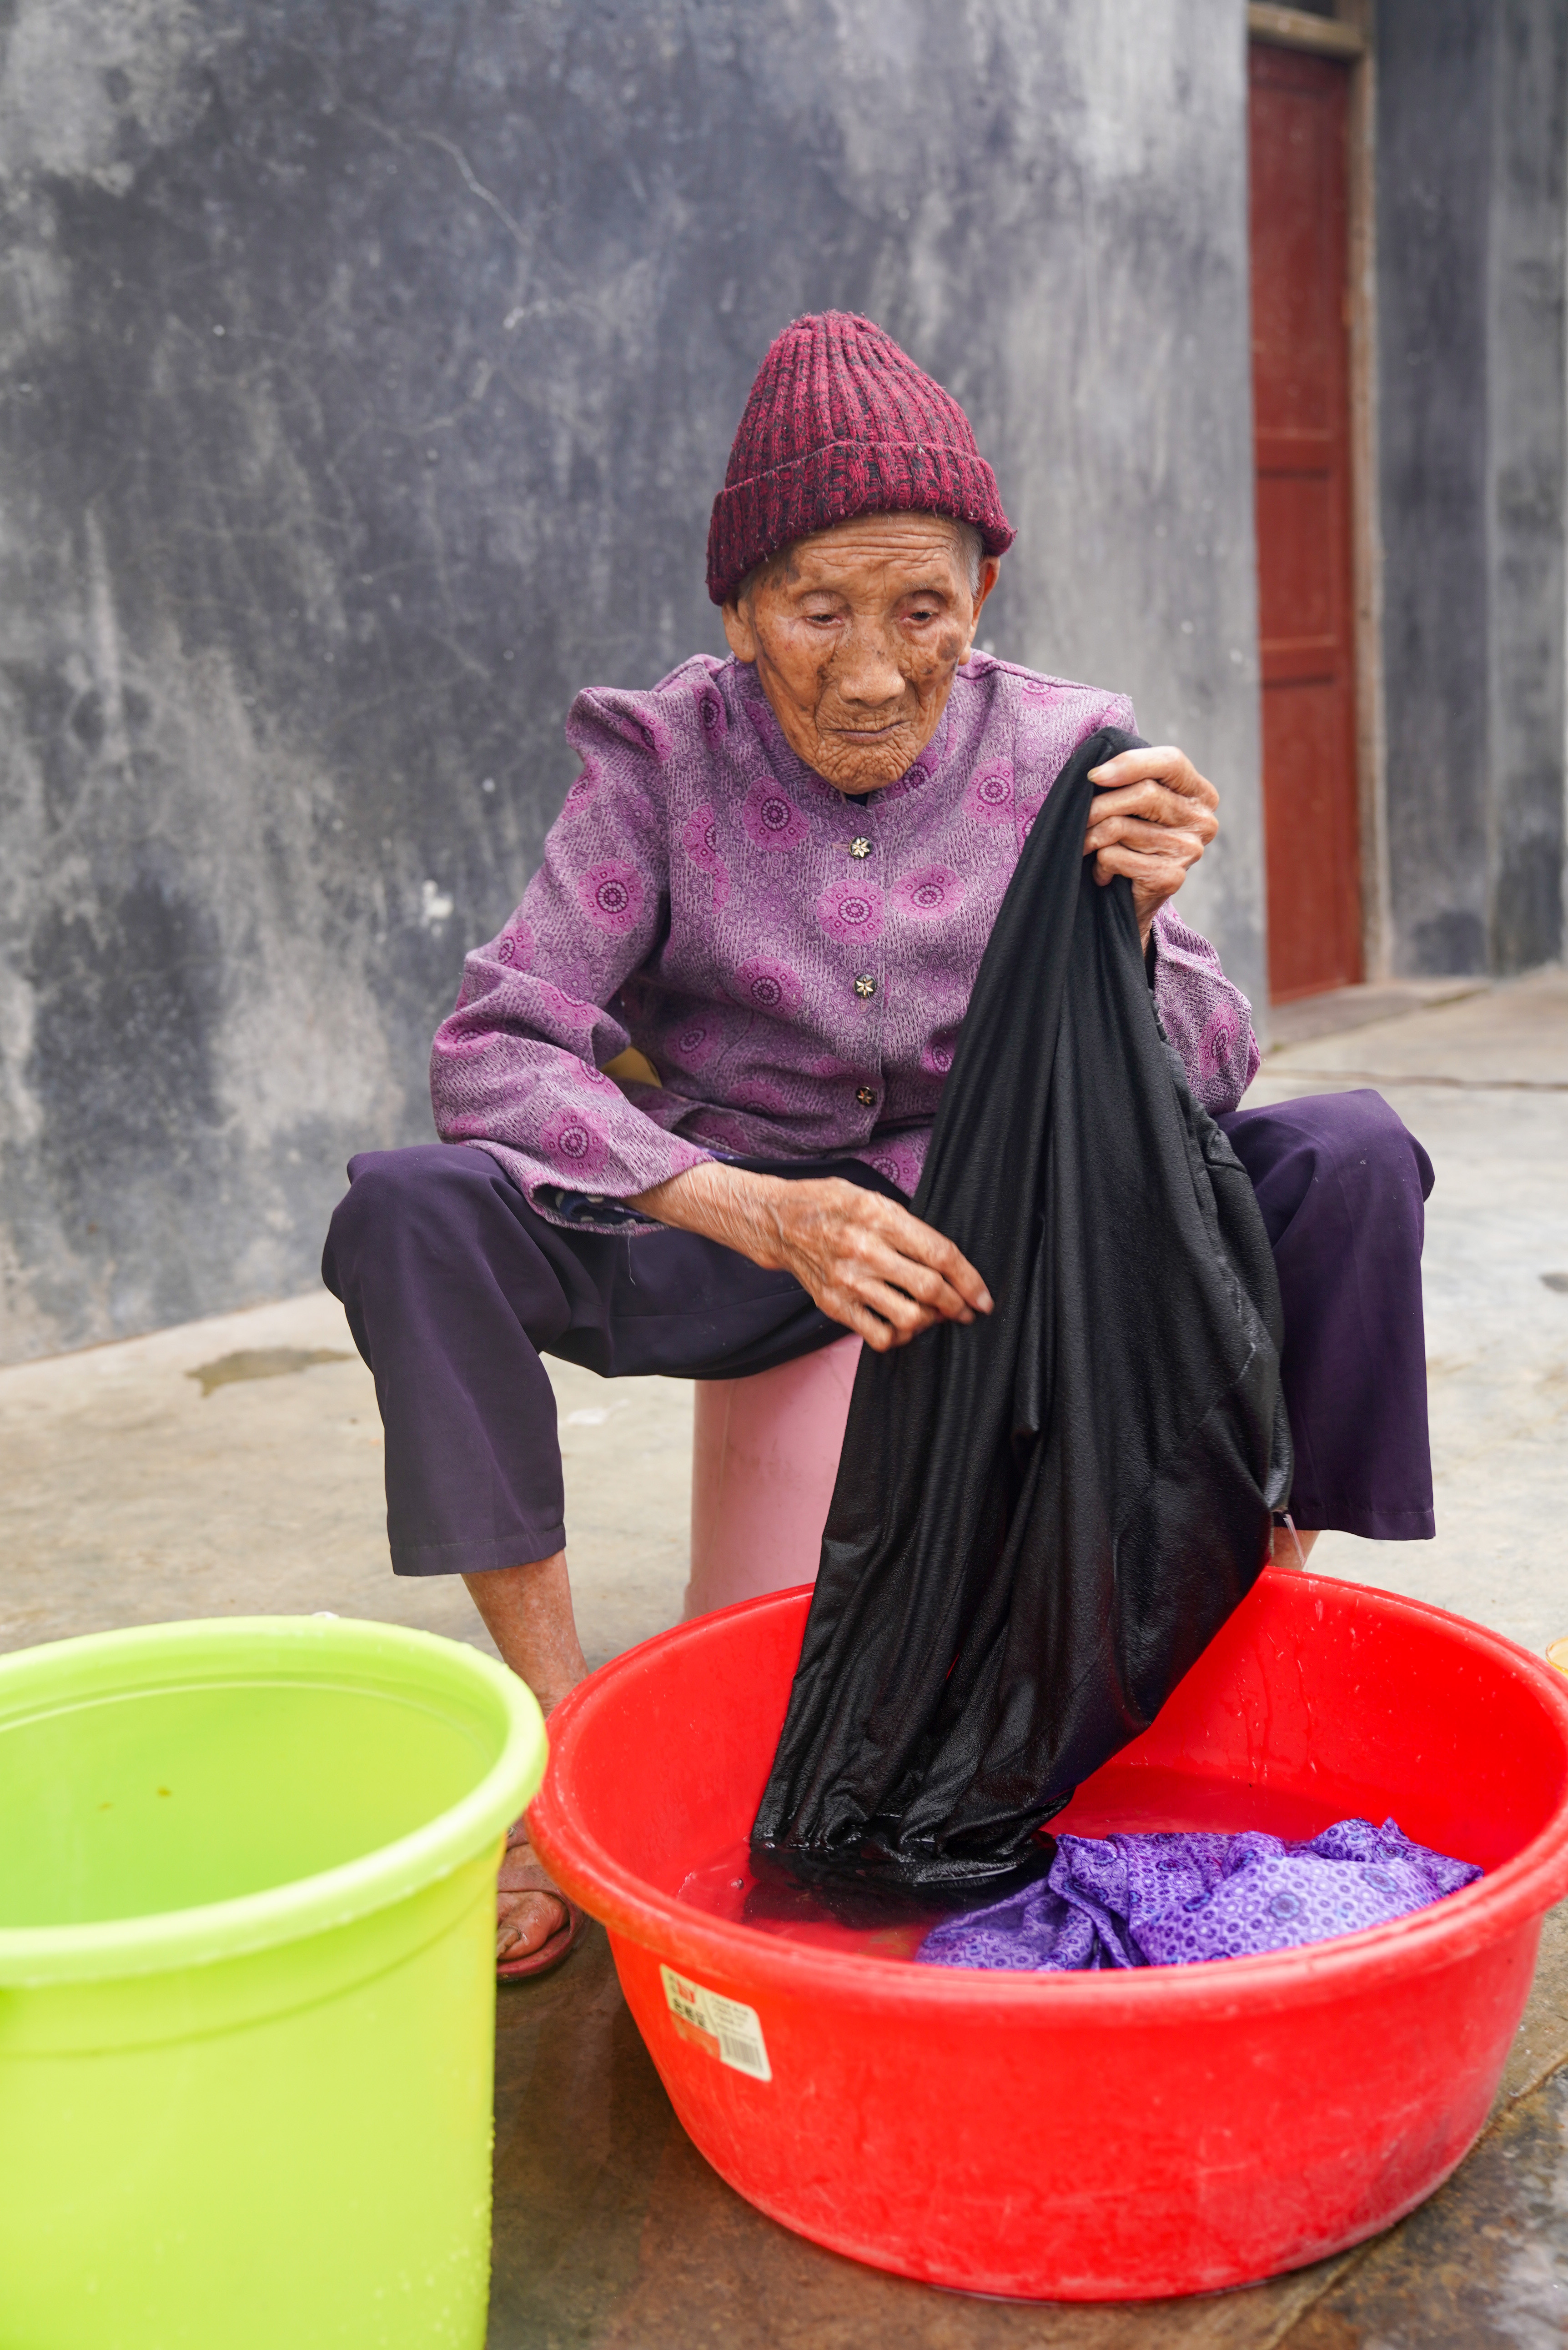 106岁的潘婆婆有点小傲娇:每顿饭都要吃肉 洗澡要慢慢享受 